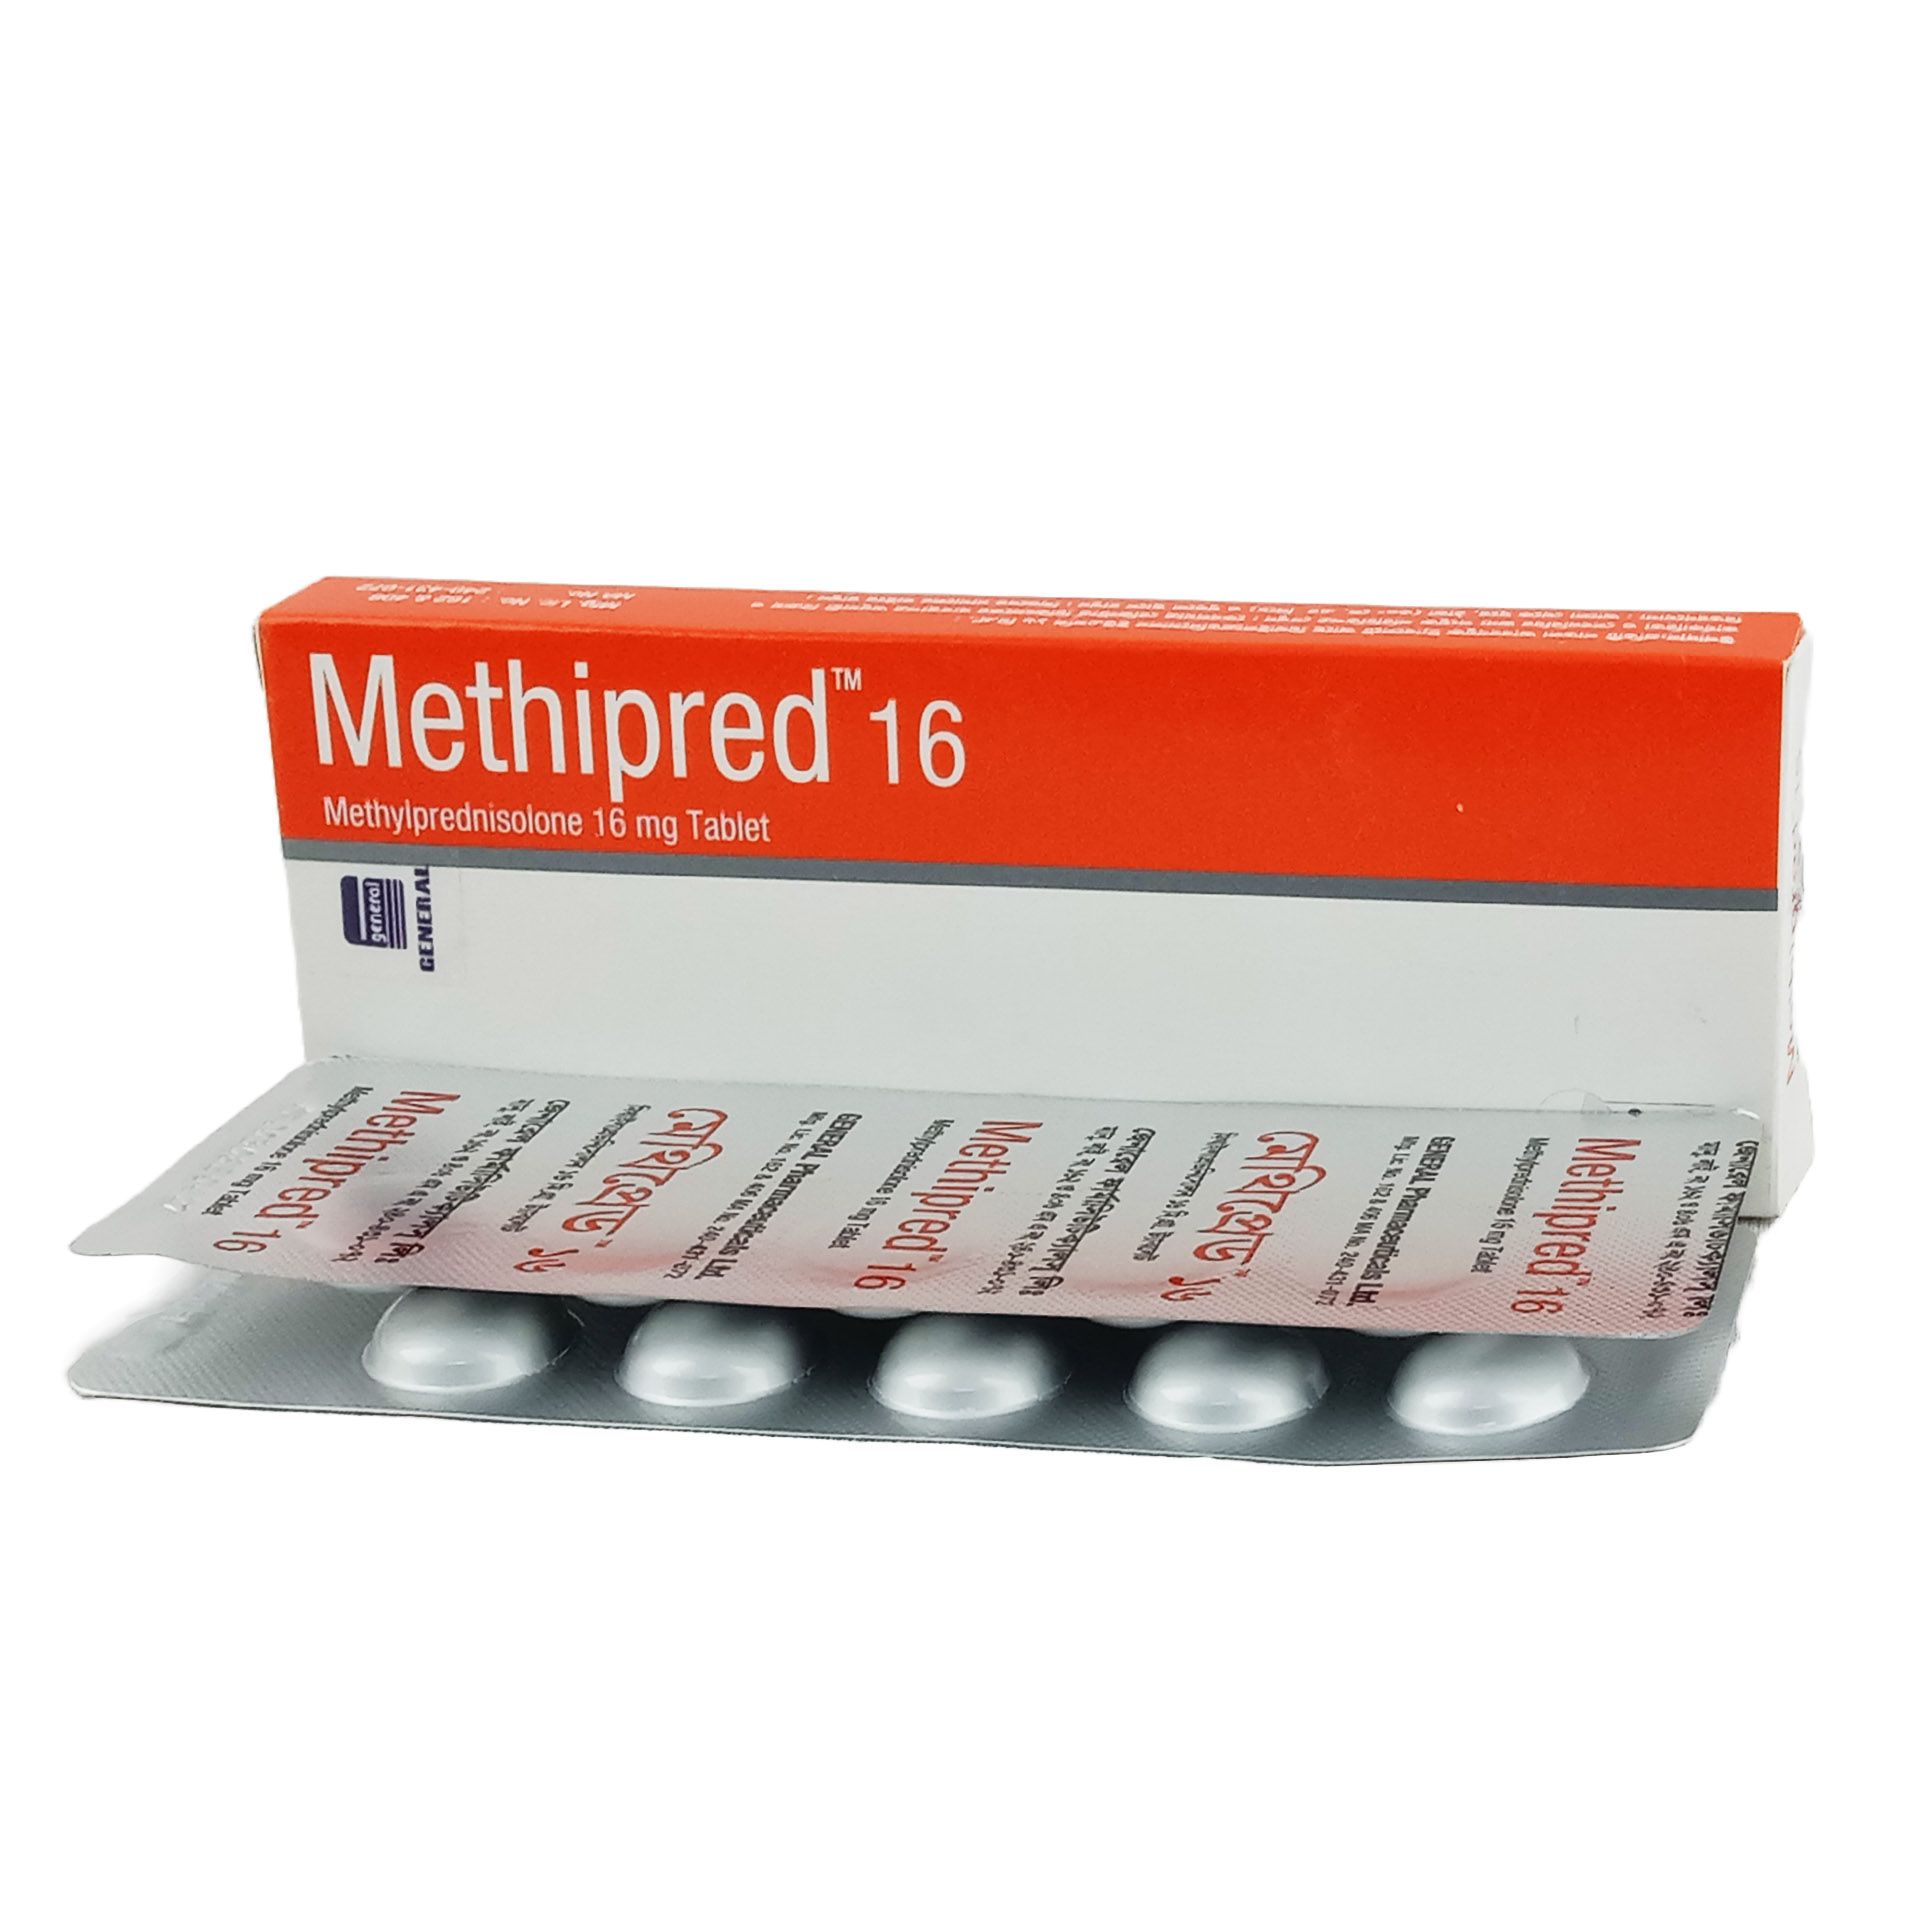 Methipred 16mg Tablet